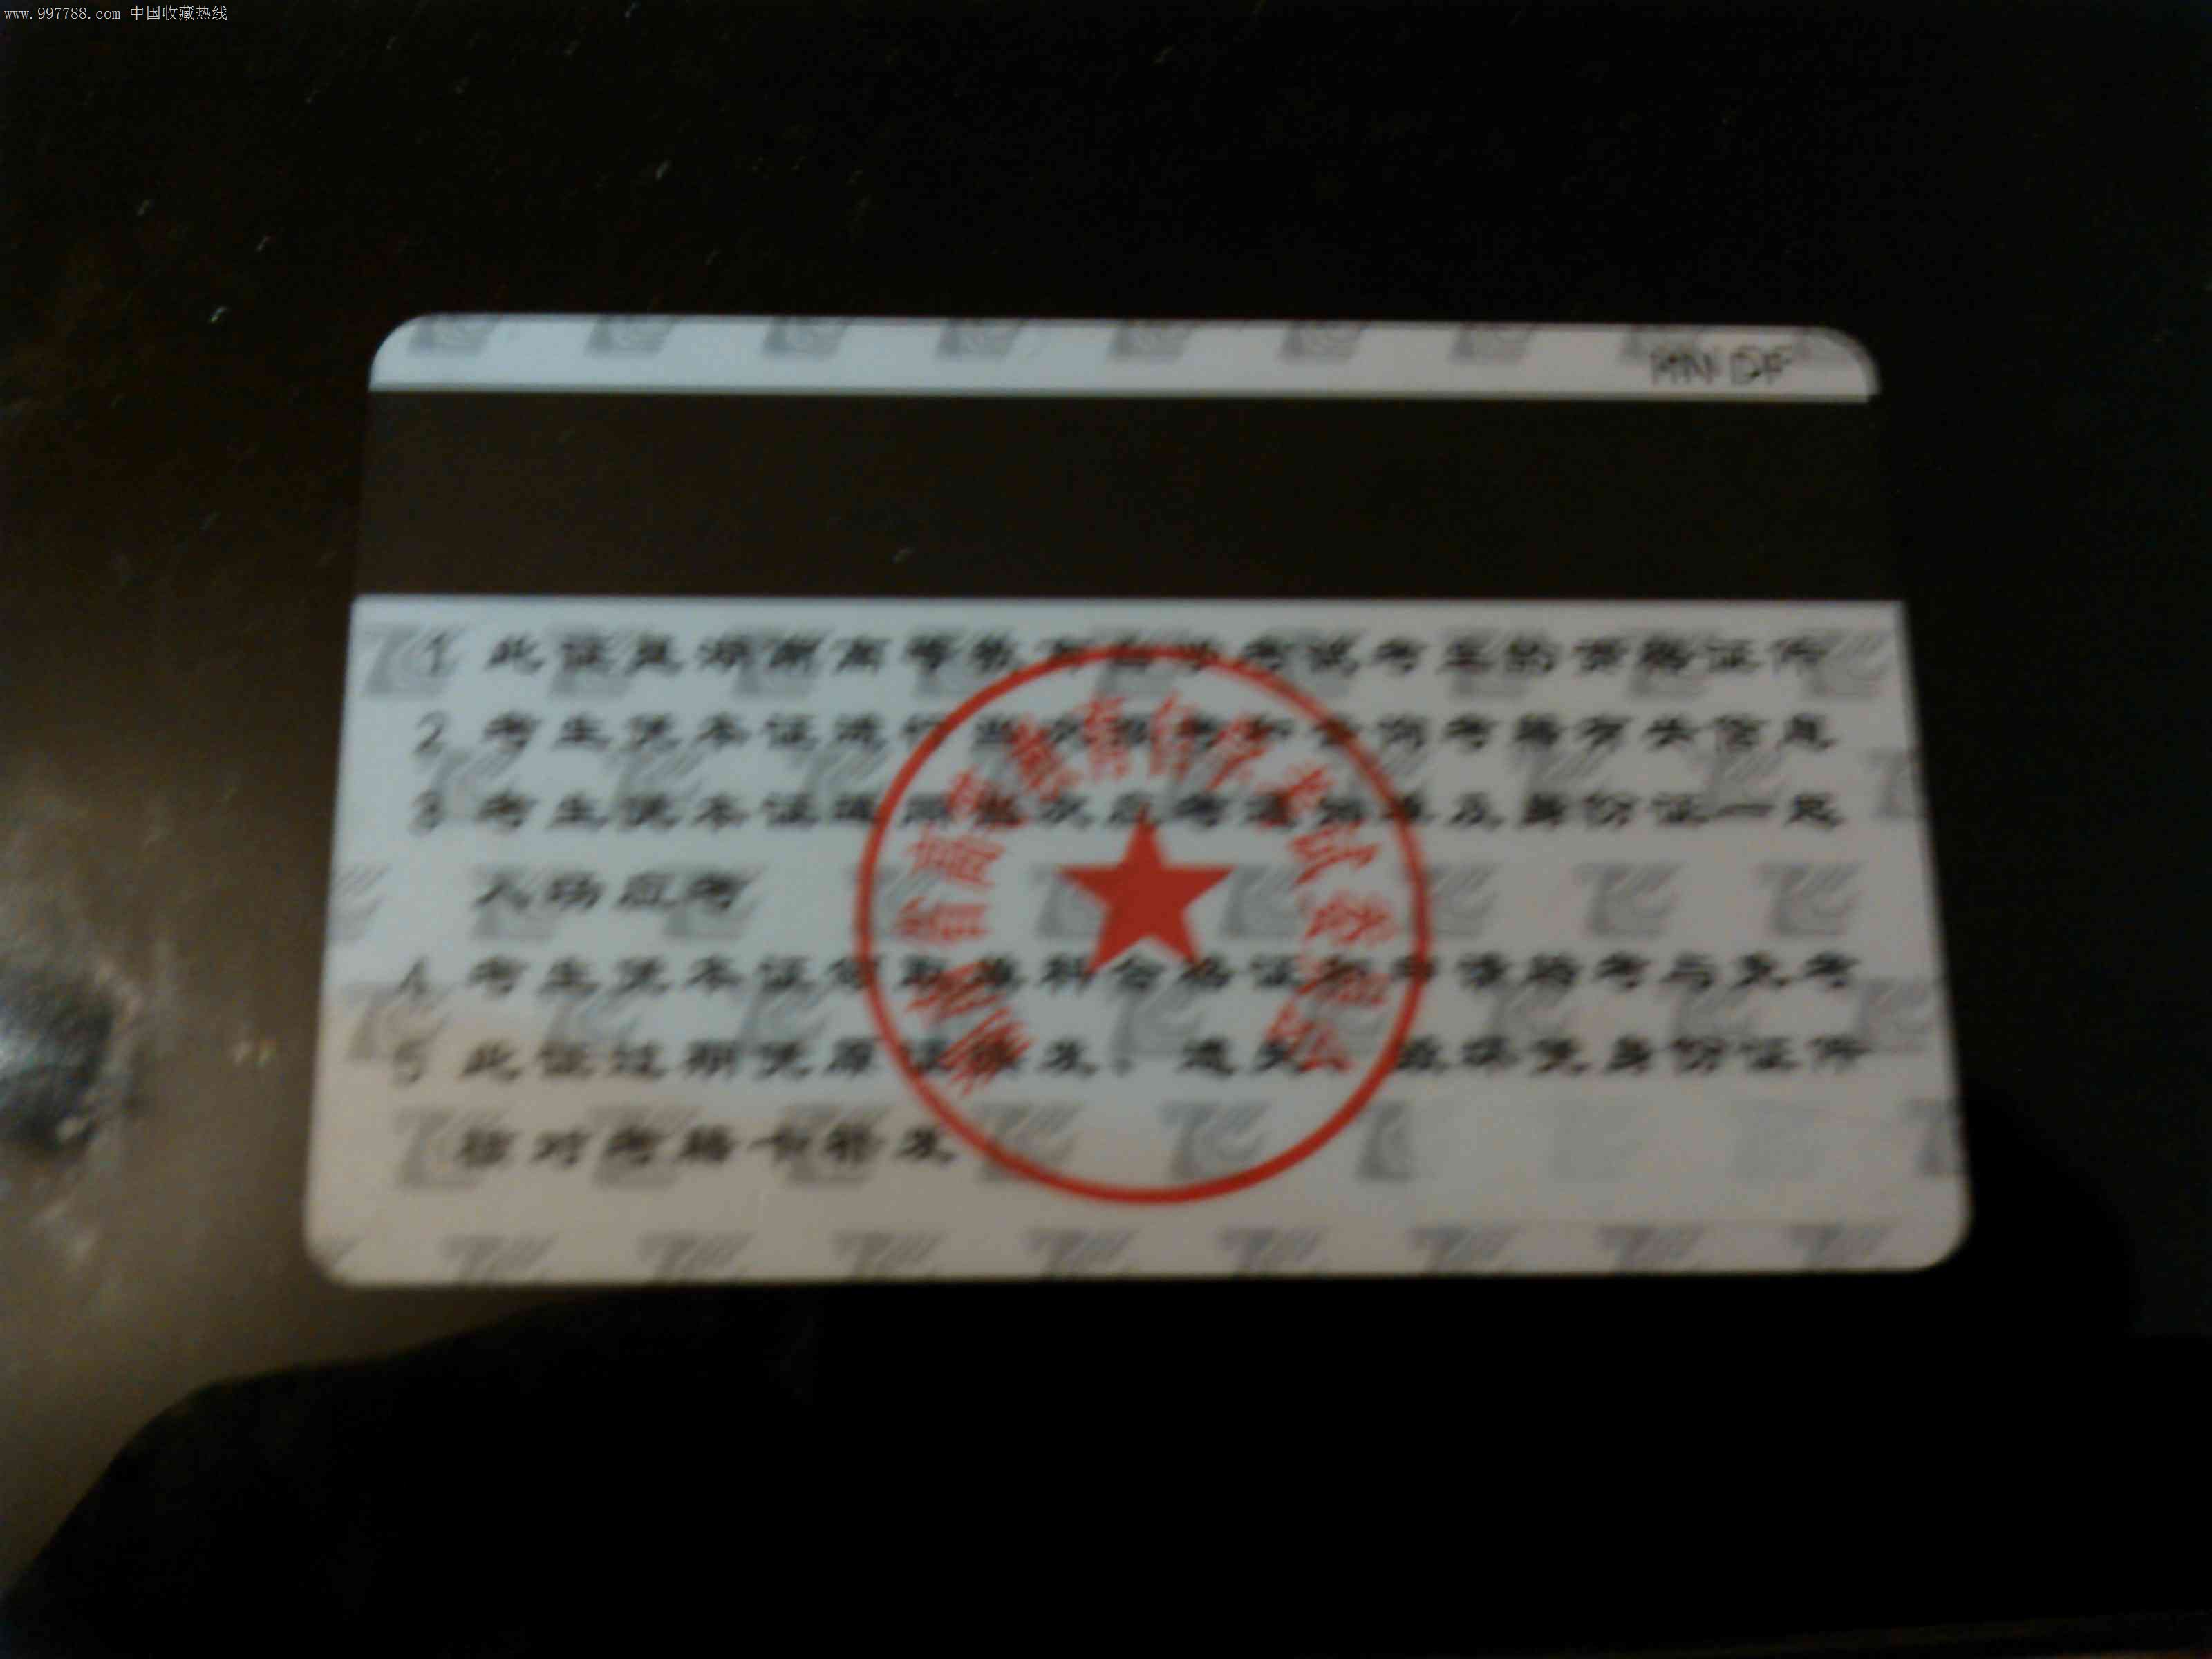 自考考籍证,校园卡,学生证卡,21世纪初,磁卡,湖